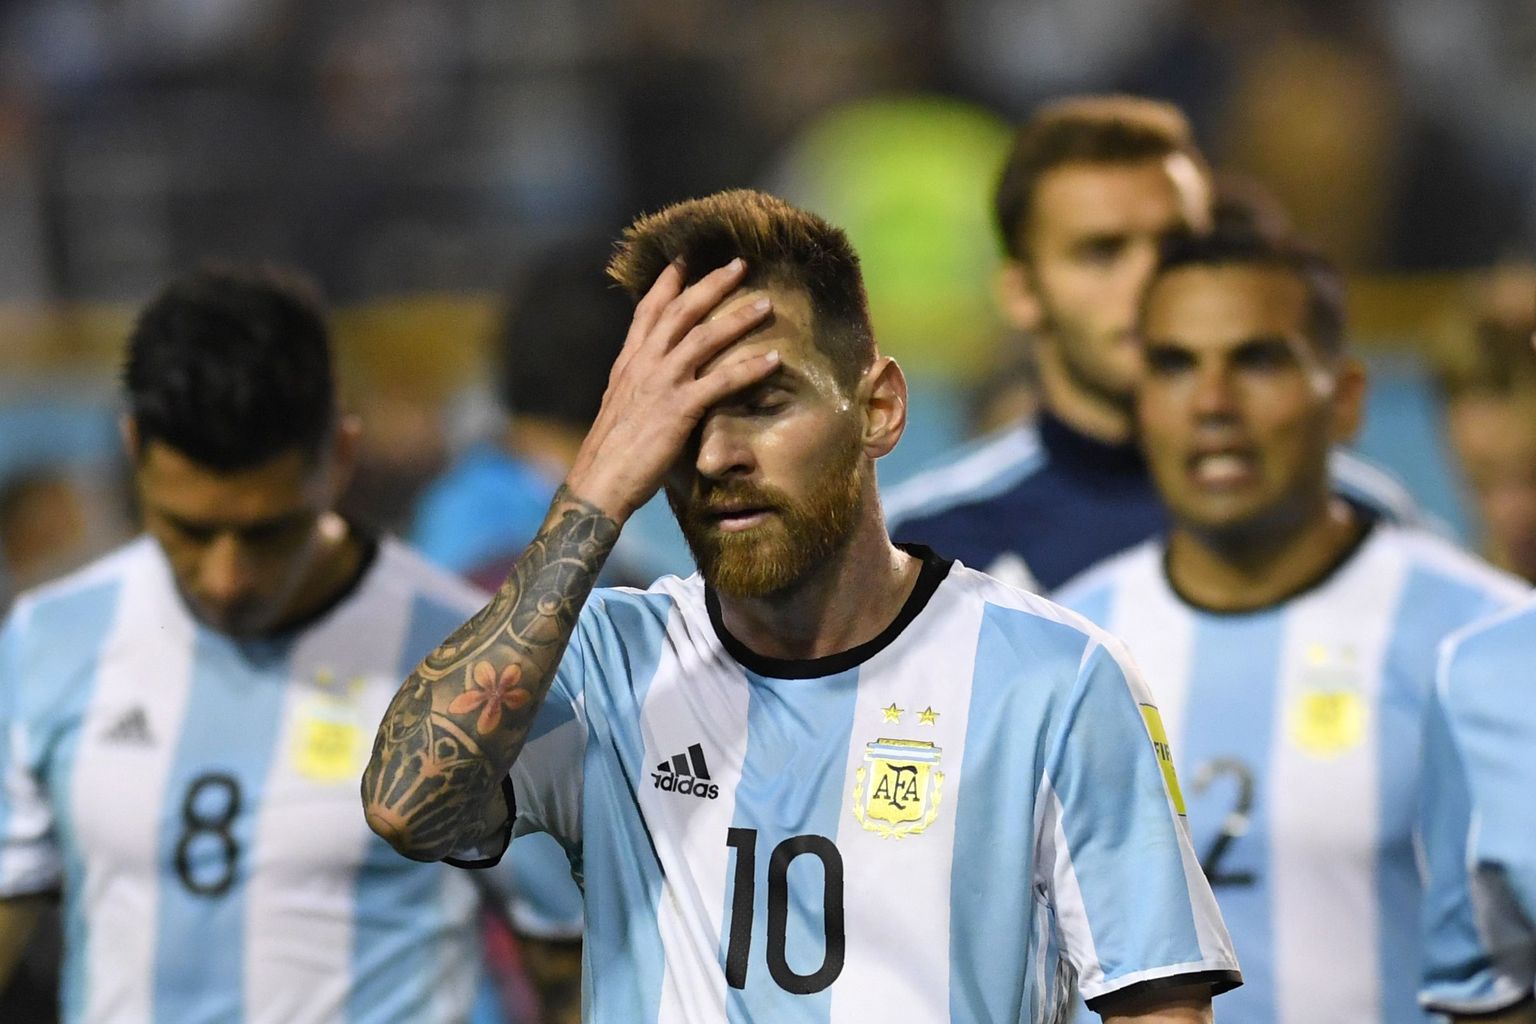 Lionel Messi sammub pettununa riietusruumi. Ühtlasi jätkasid Argentiina mängijad juba aasta kestnud vaikimisvannet ega andnud intervjuusid.